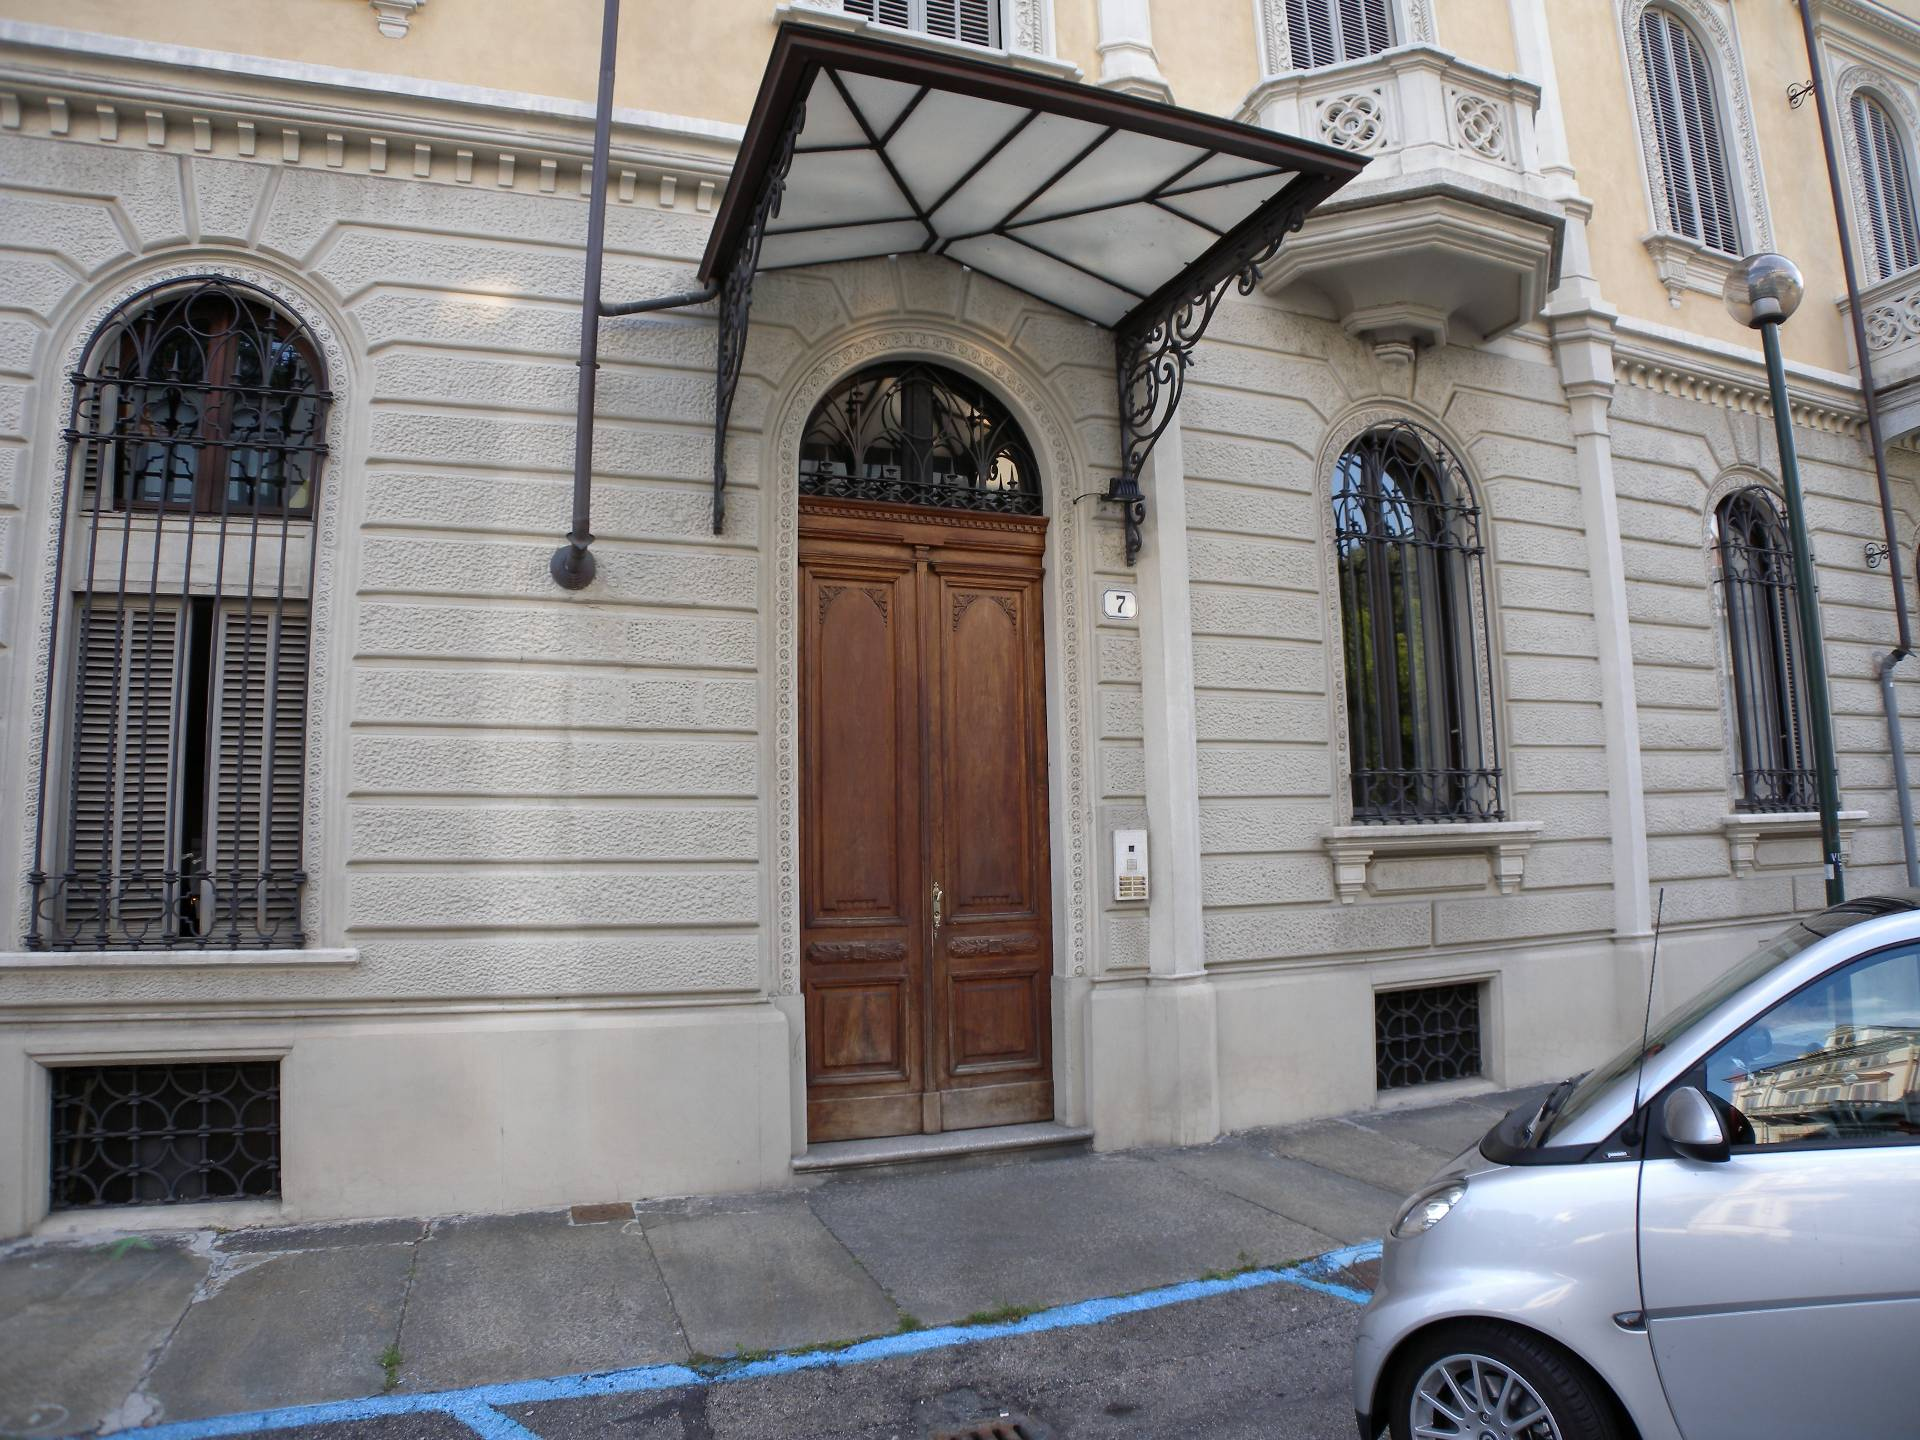 Trilocale arredato in affitto, Torino crocetta